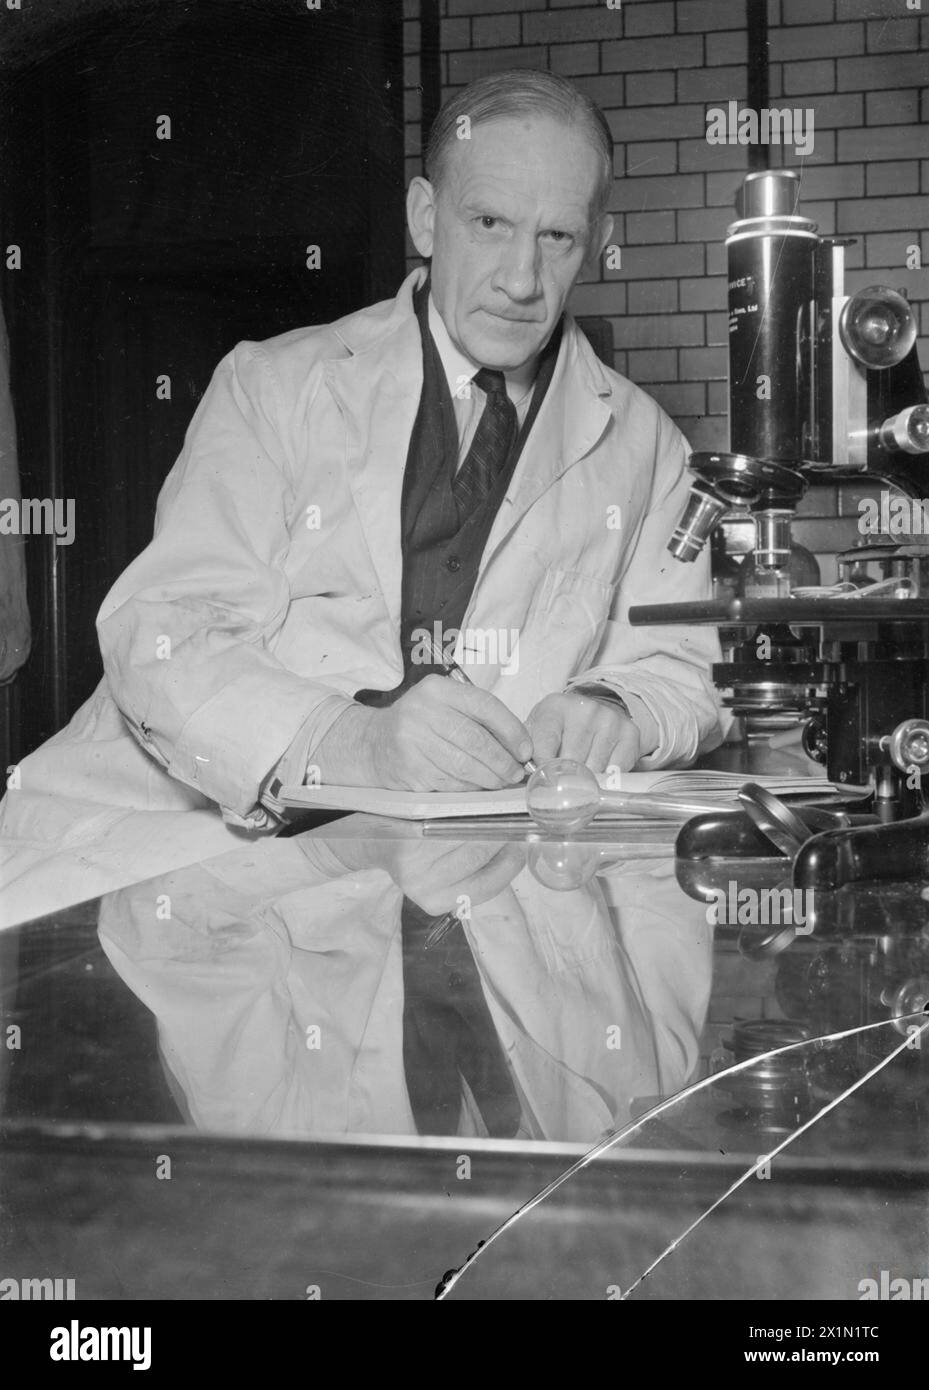 PENICILLIN VERGANGENHEIT, GEGENWART UND ZUKUNFT: ENTWICKLUNG UND PRODUKTION VON PENICILLIN, ENGLAND, 1944 - Professor Sir Robert Robinson sitzt neben seinem Mikroskop in einem Labor der Universität Oxford. Sir Robert, zusammen mit Dr. Chain und Dr. Abraham von der Pathologischen Schule, versucht synthetisches Penicillin herzustellen. Seit 1930 ist er Waynflete Professor für Chemie in Oxford und seit 1940 Mitglied des Privy Council Committee for Scientific and Industrial Research. Stockfoto